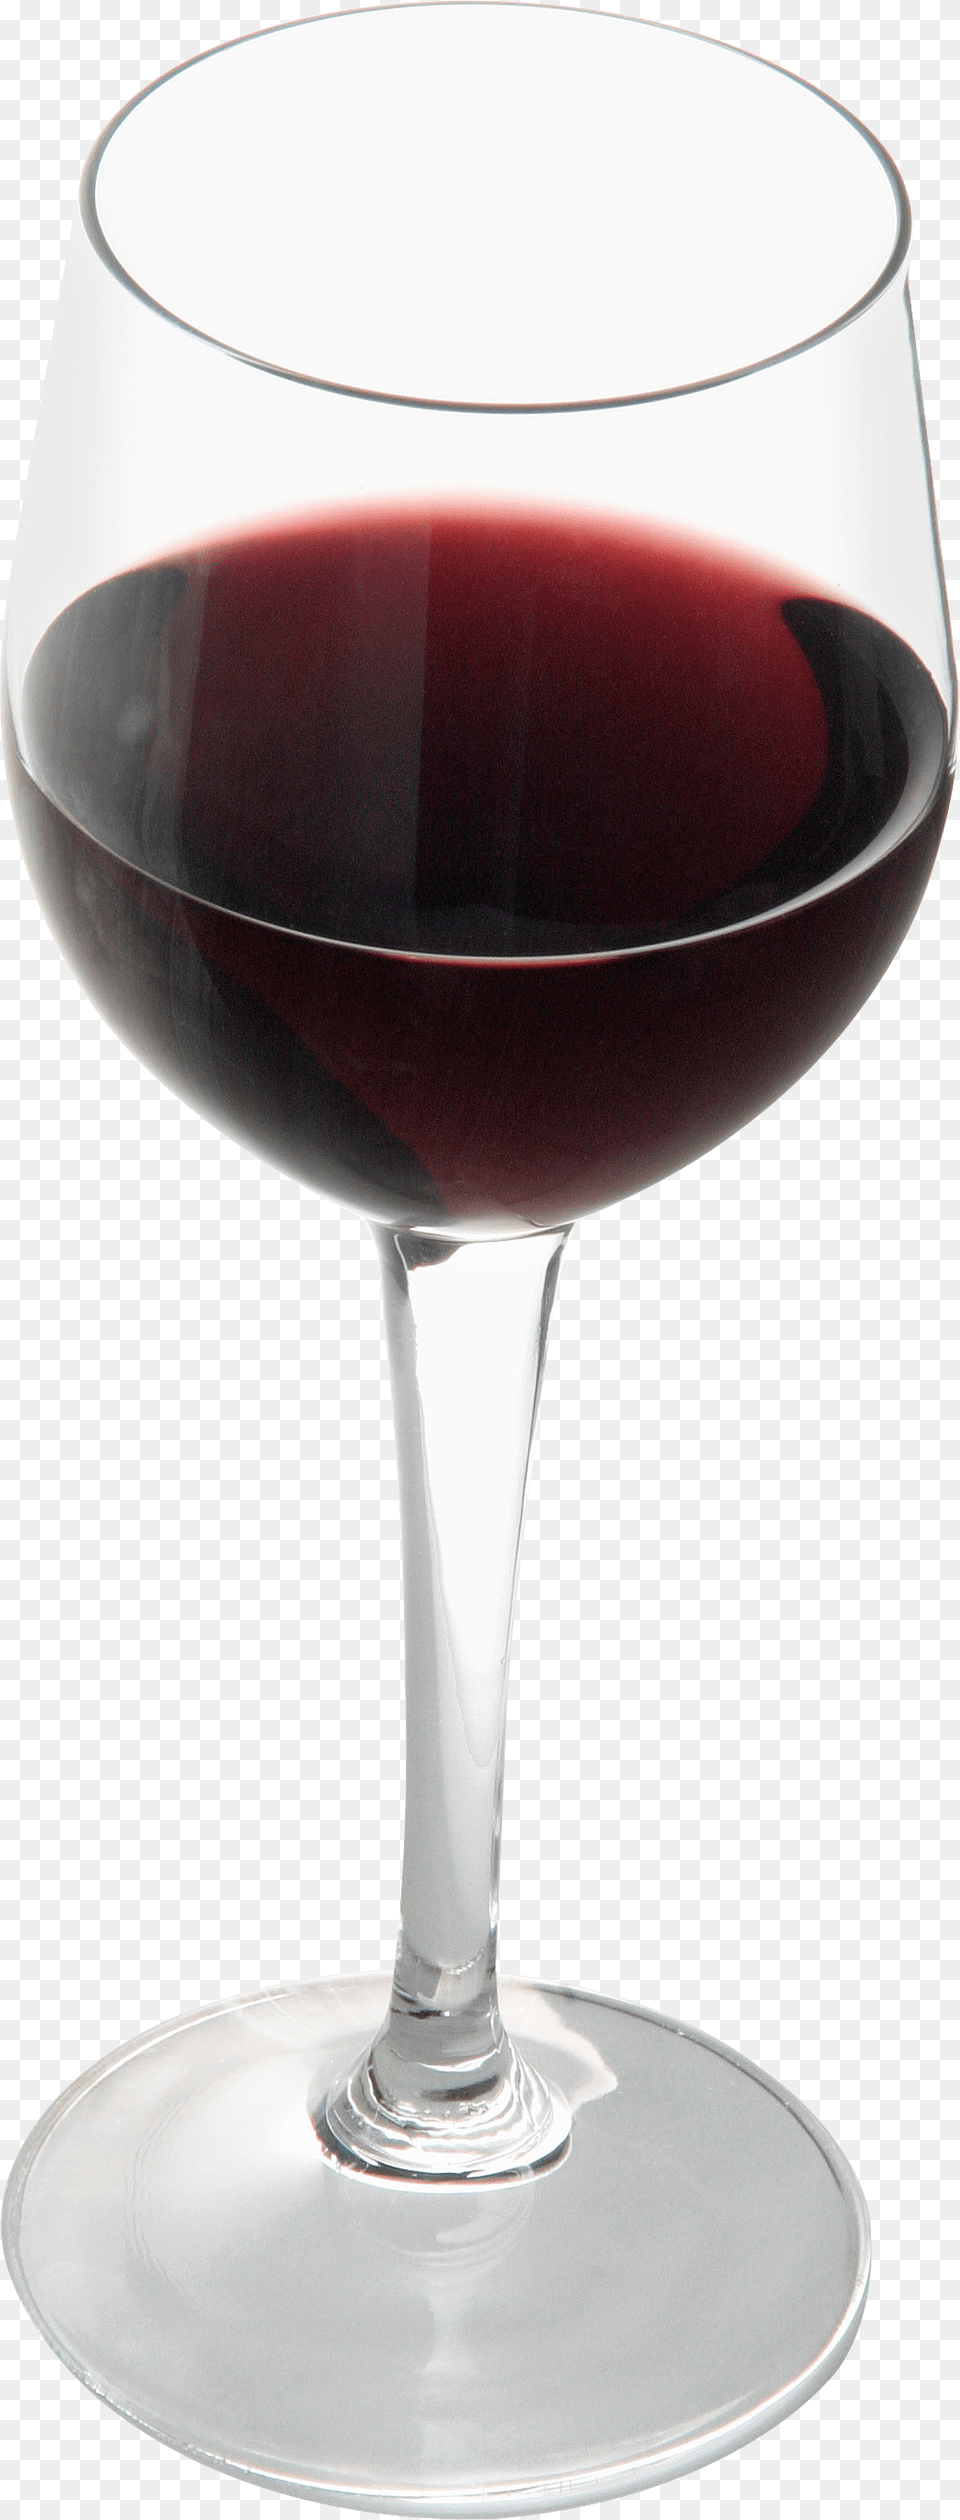 Glass Clipart File Klipart Bokal Vina, Alcohol, Beverage, Liquor, Red Wine Free Transparent Png